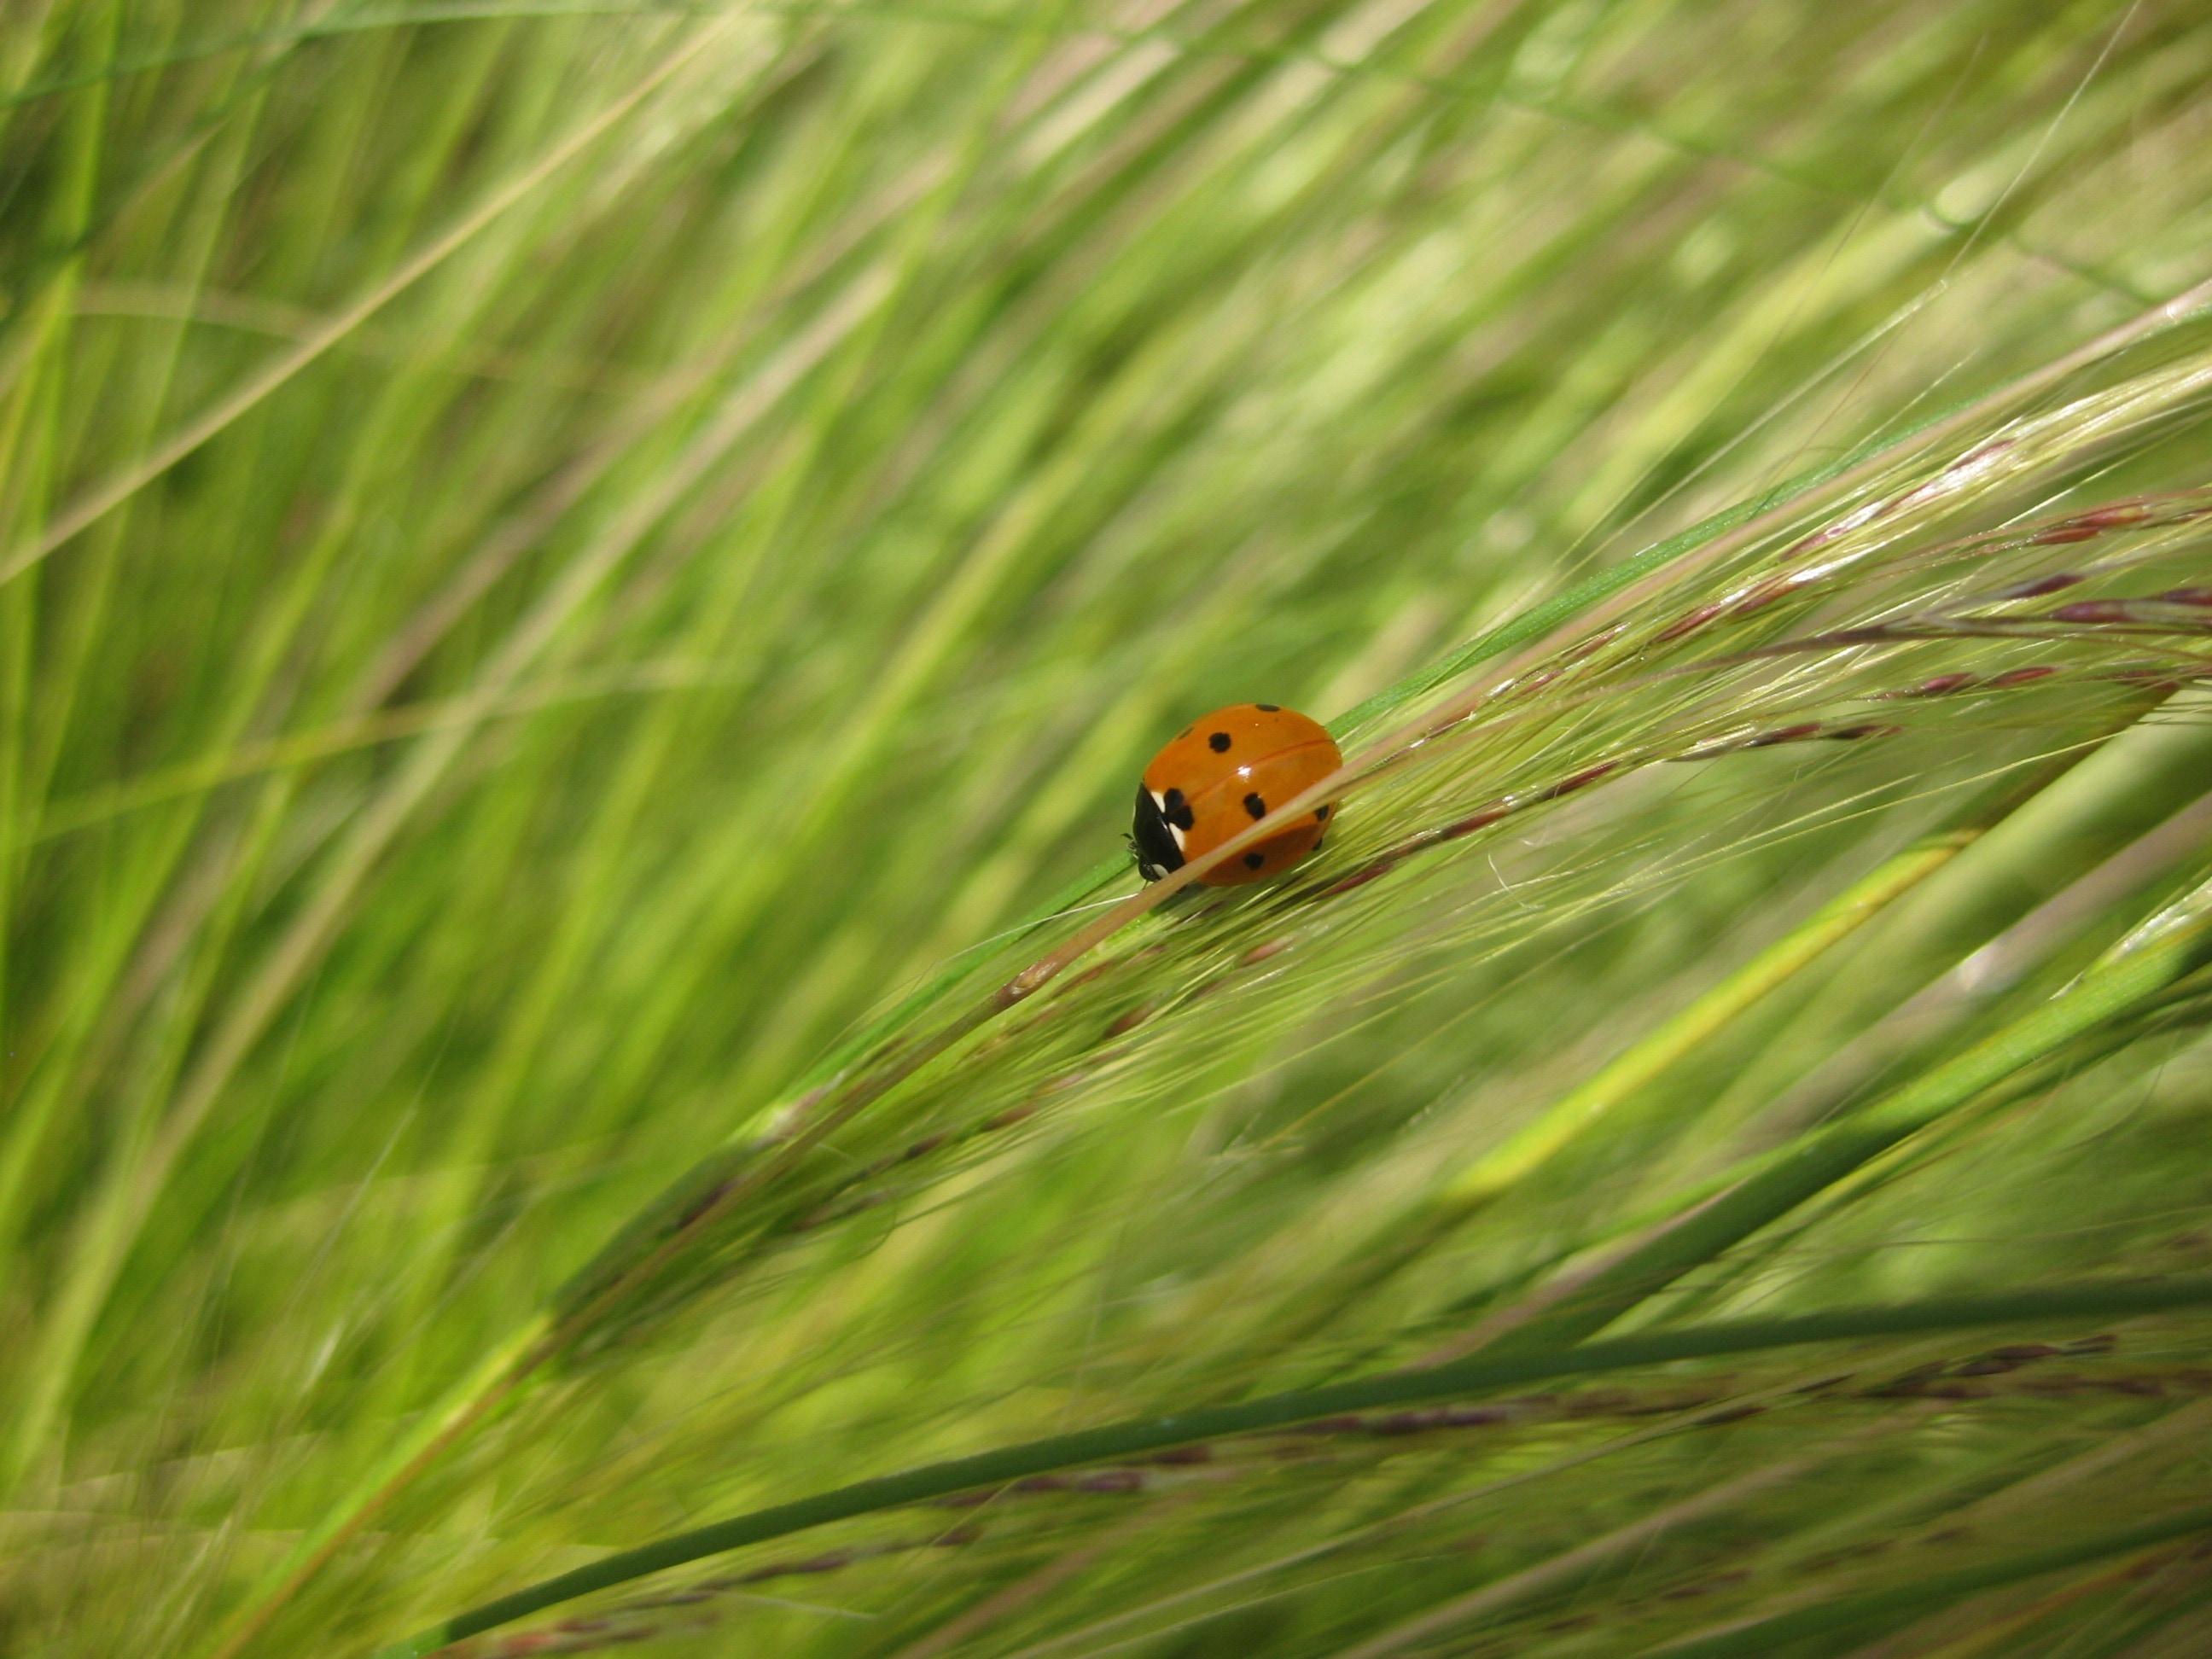 brown ladybug on grass